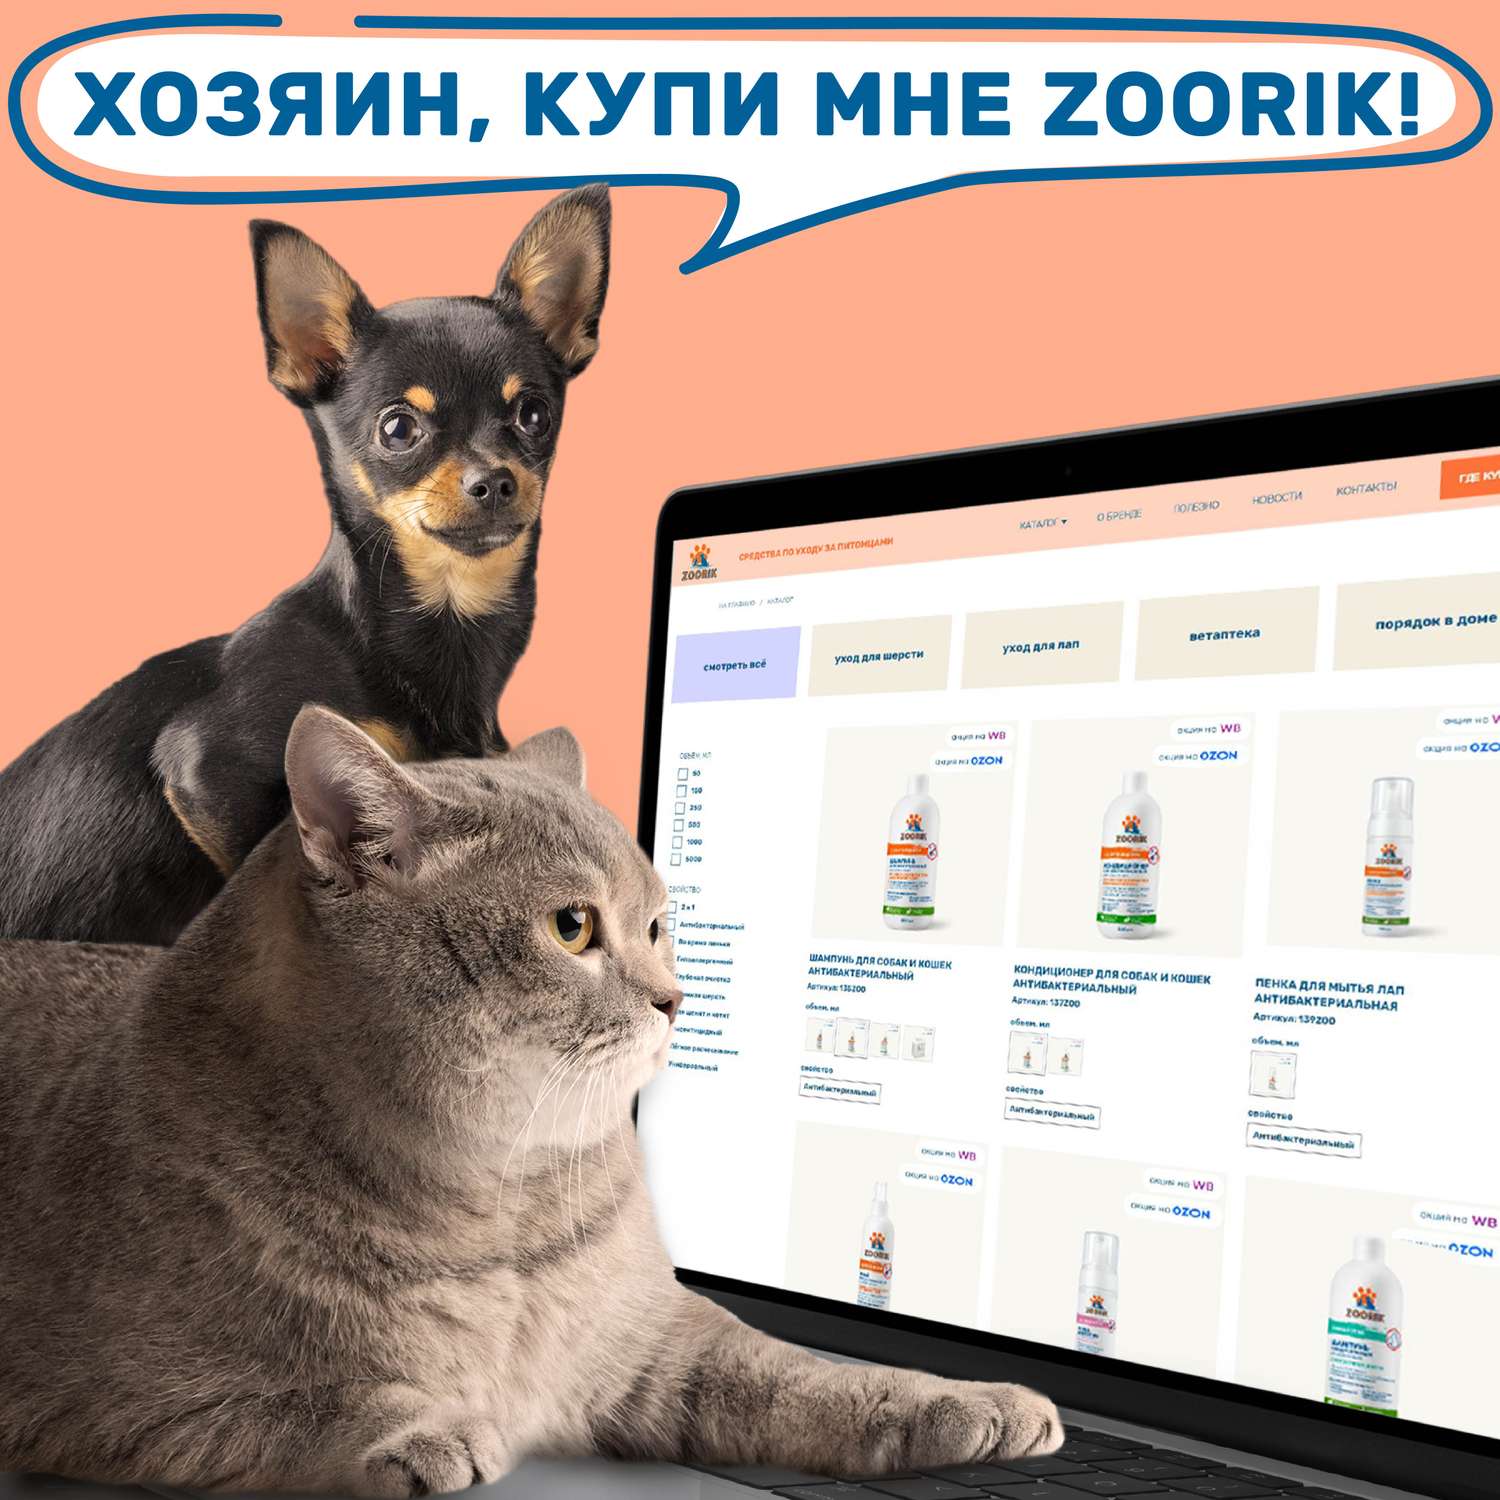 Шампунь для собак и кошек ZOORIK универсальный 1000 мл - фото 12